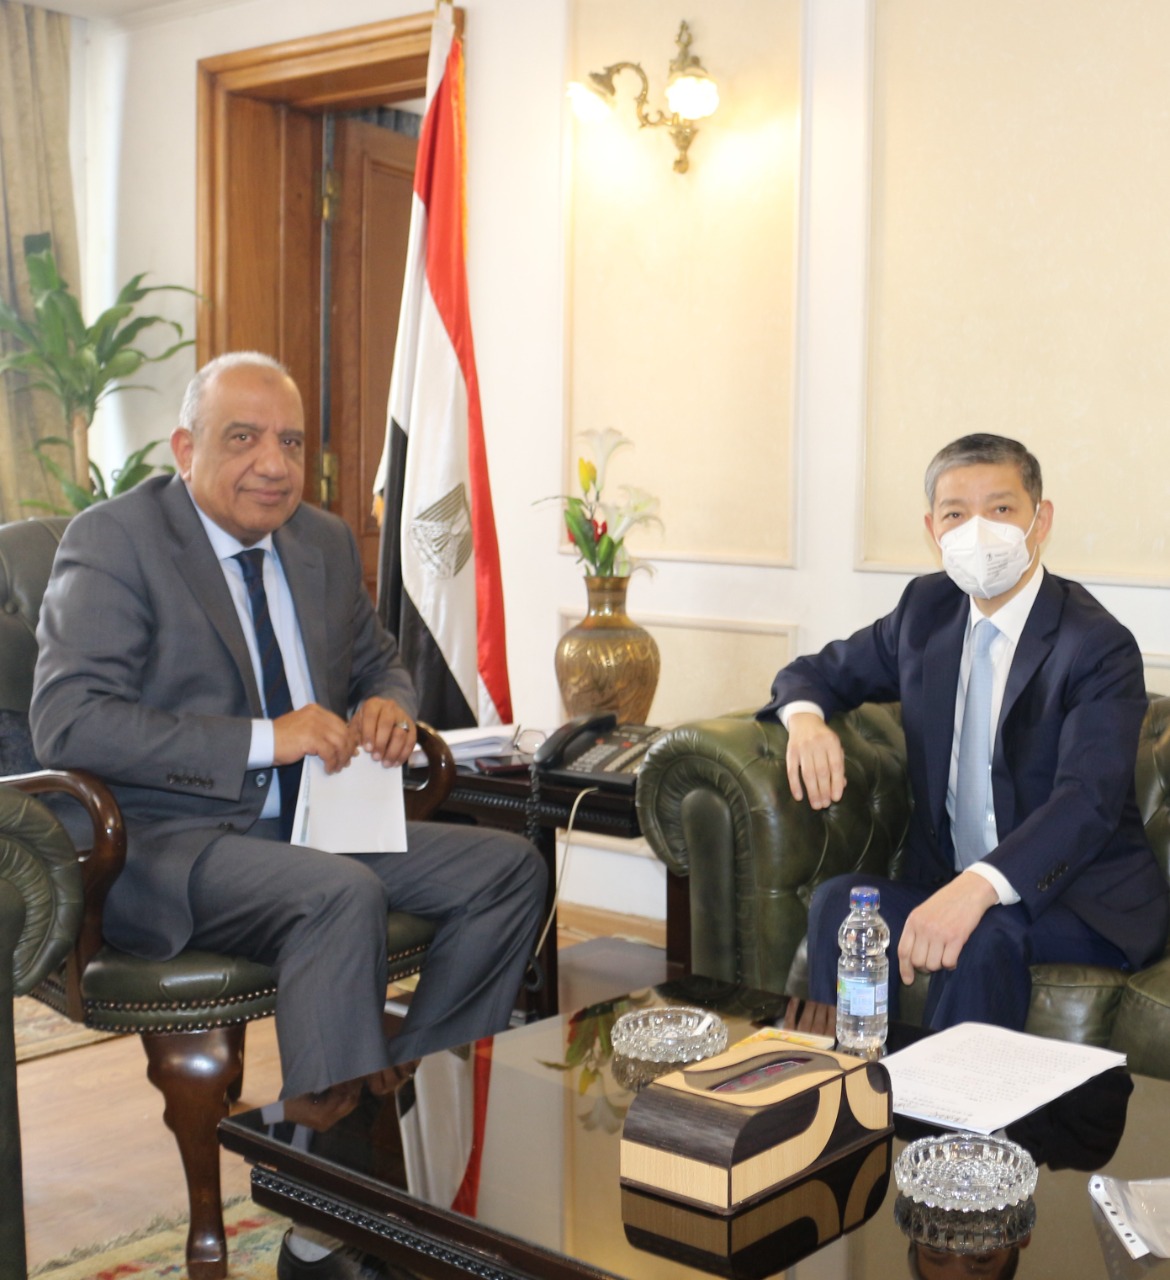 وزير قطاع الأعمال العام يستقبل السفير الصيني بالقاهرة لبحث تعزيز التعاون الاقتصادي والفرص الاستثمارية